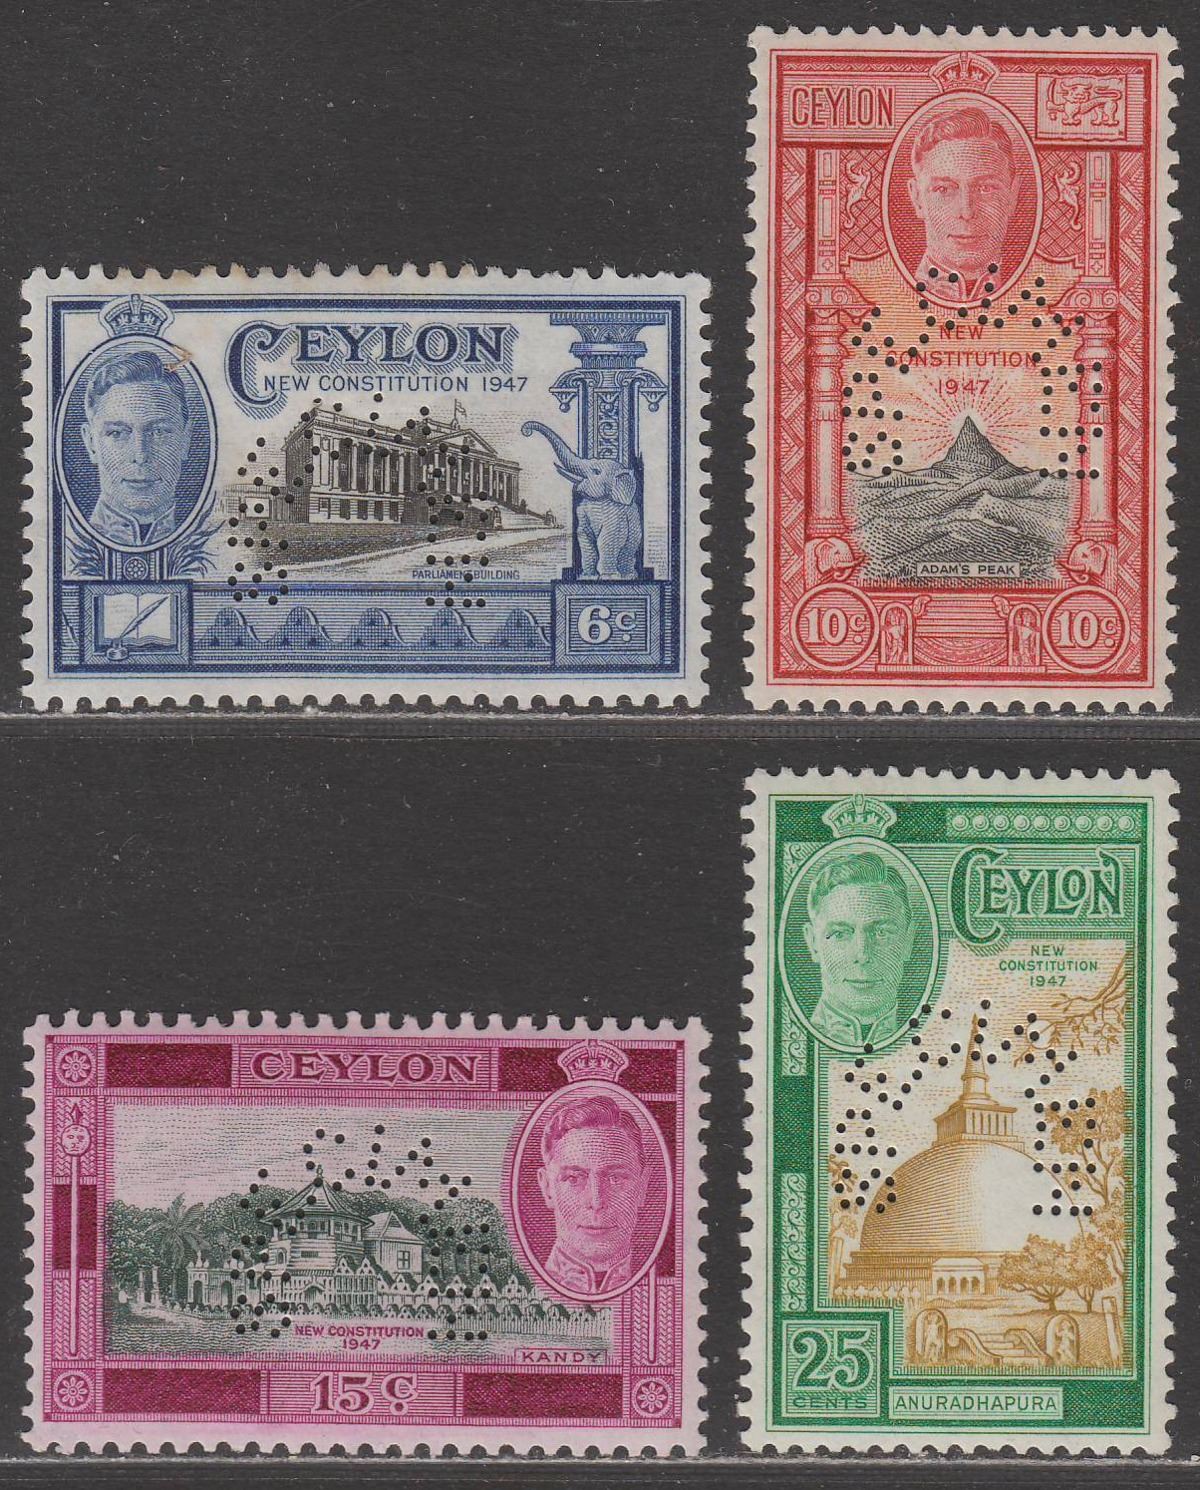 Ceylon 1947 KGVI New Constitution SPECIMEN Perf Set Mint SG402s-405s cat £130